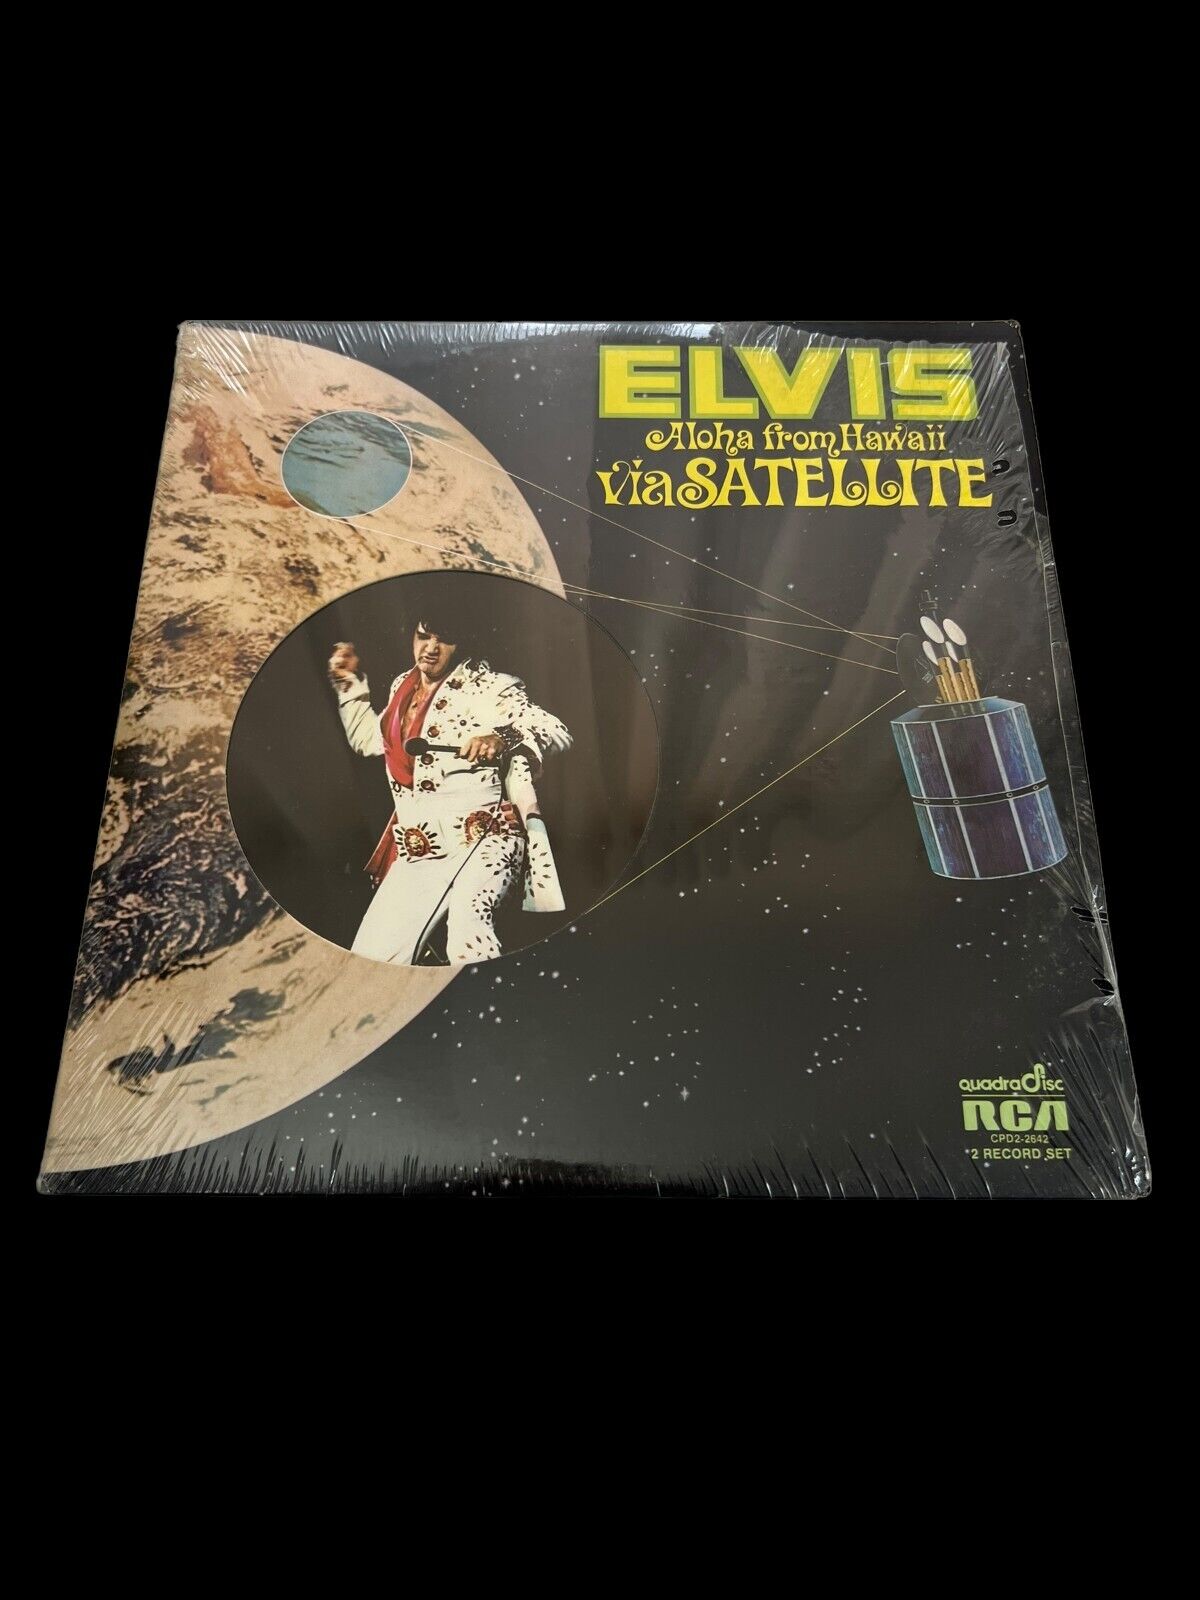 SEALED, Elvis Presley ‎– Aloha From Hawaii Via Satellite, Promo Stamp, US, 1975